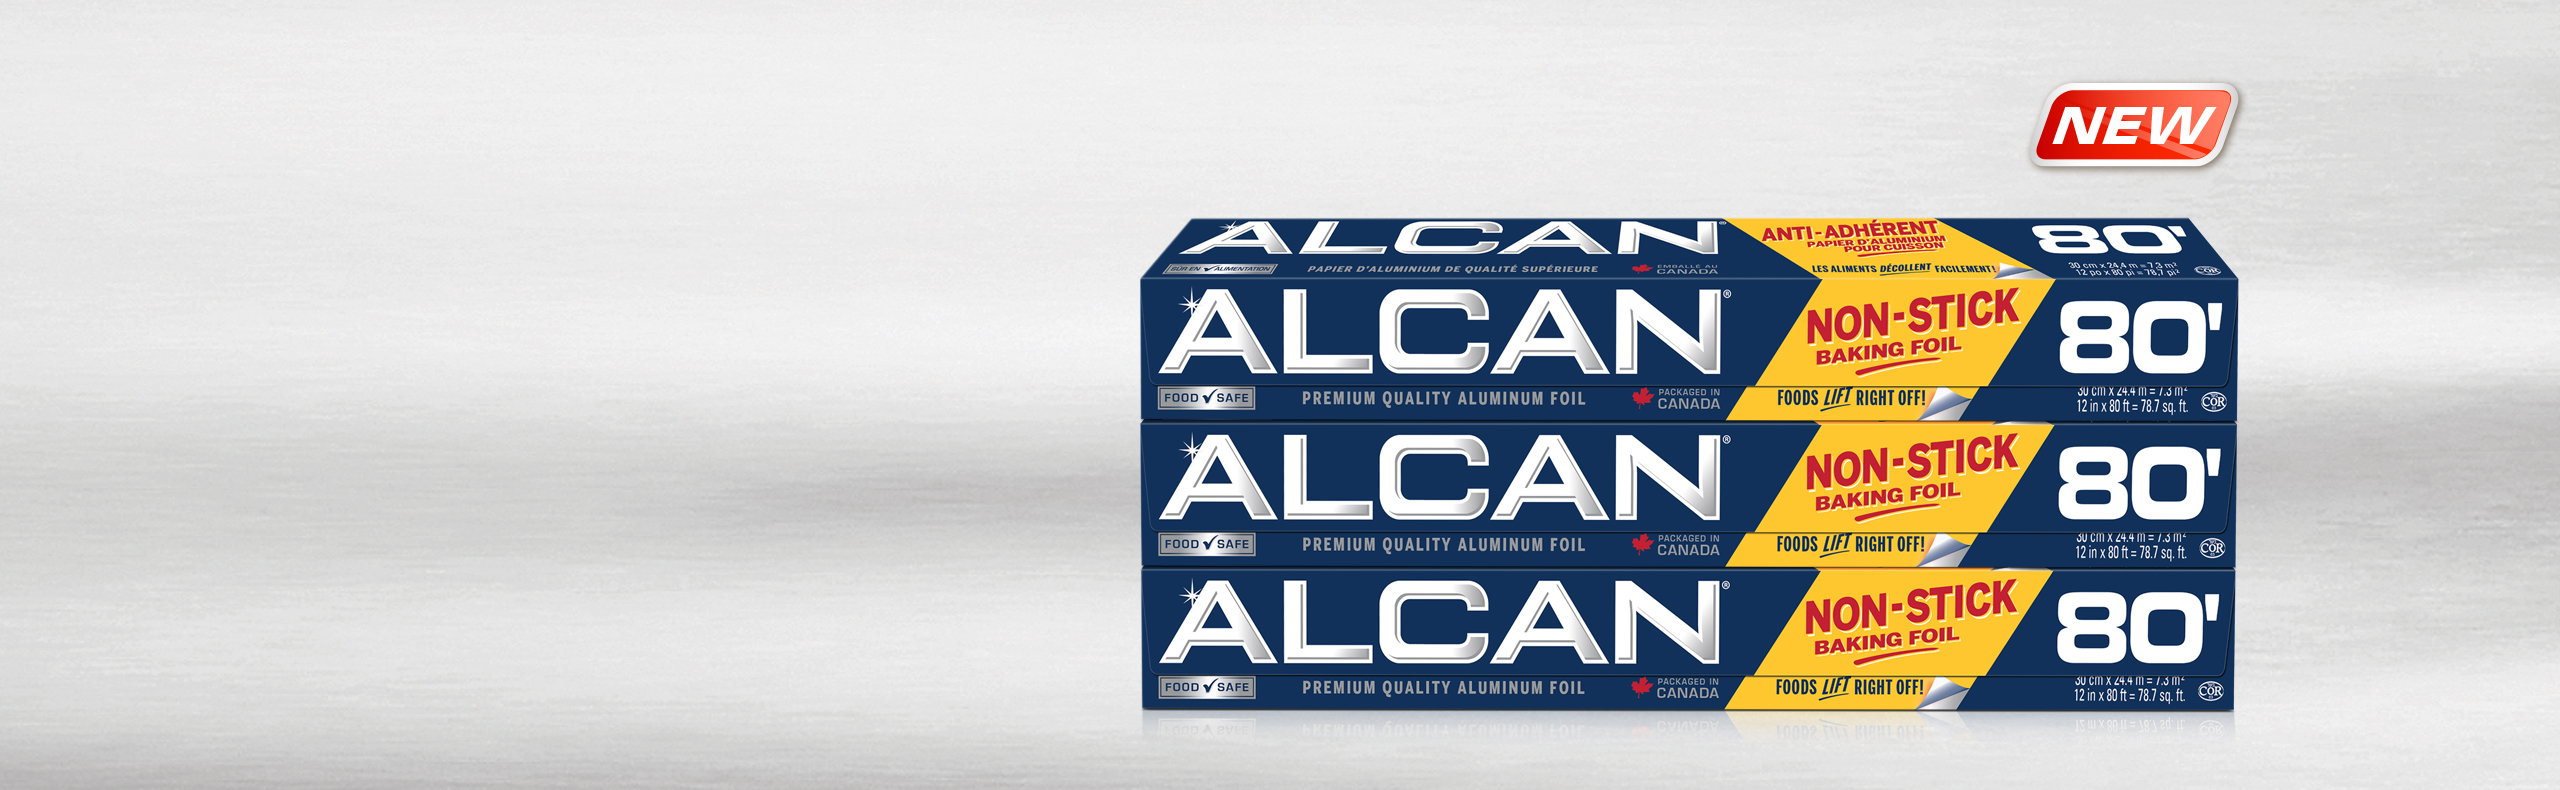 Alcan Non Stick Aluminum Foil Wrap, Pack of 3